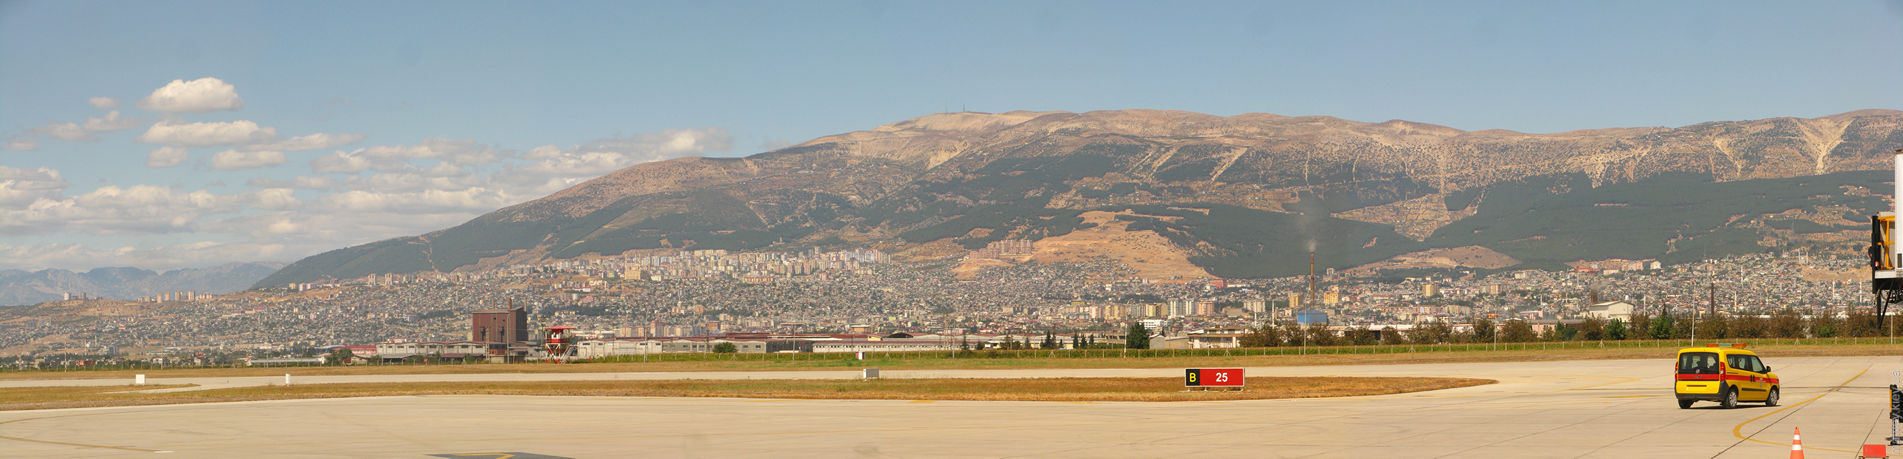 Панорама. Вид на місто та гору Ахир Даг з аеропорту KCM. Кахраманмараш, Турция